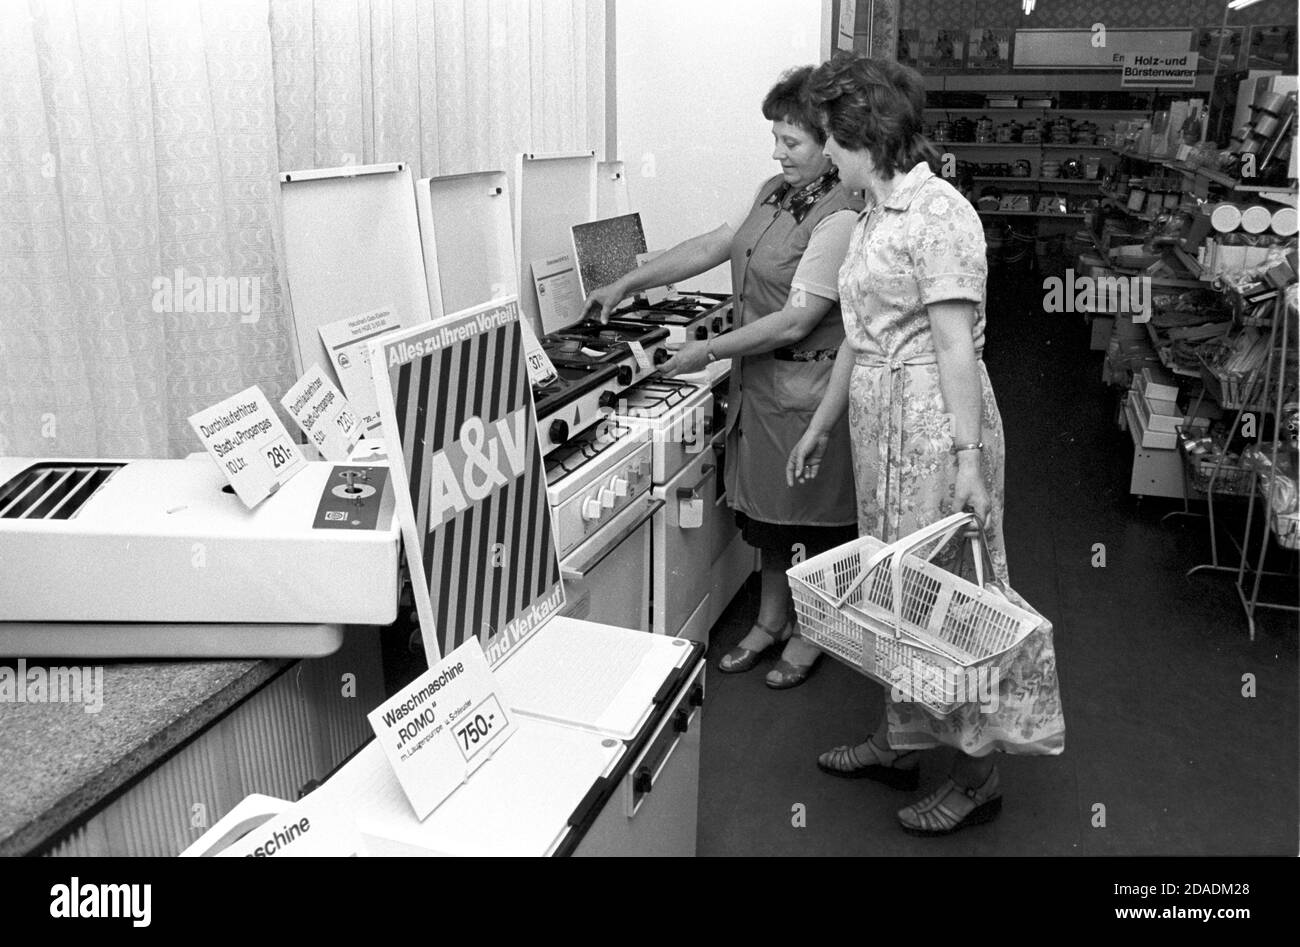 30 novembre 1983, Saxe, Eilenburg: Un magasin d'articles ménagers à Eilenburg en automne 1984, où les appareils ménagers révisés et réparés tels que les chauffages à débit, les machines à laver, les chaudières à eau et les poêles à gaz sont offerts à prix réduits dans un coin spécial. Date exacte d'admission inconnue. Photo: Volkmar Heinz/dpa-Zentralbild/ZB Banque D'Images